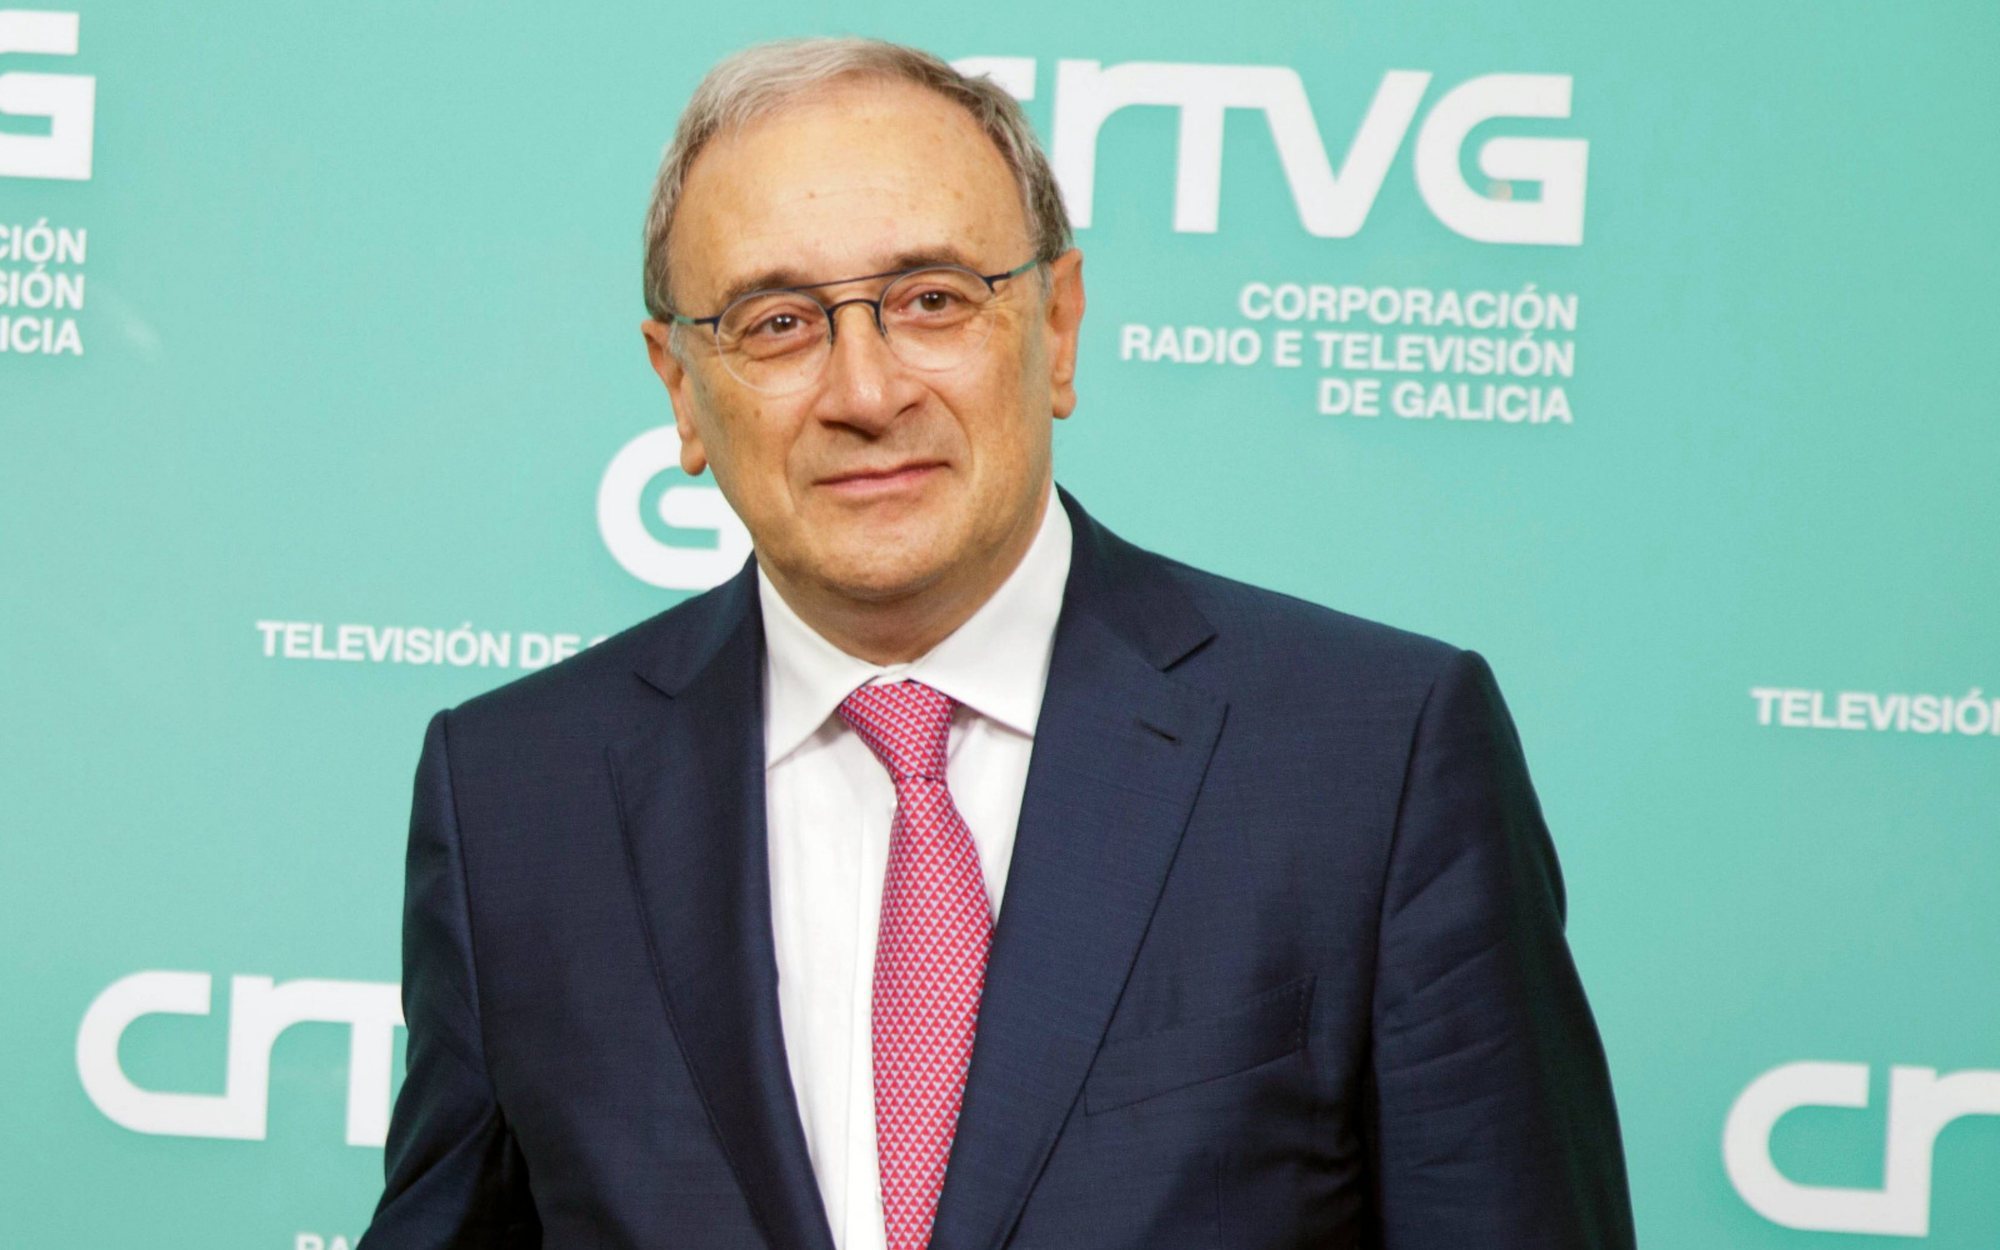 Alfonso Sánchez Izquierdo, director general de la CRTVG, nuevo presidente de FORTA